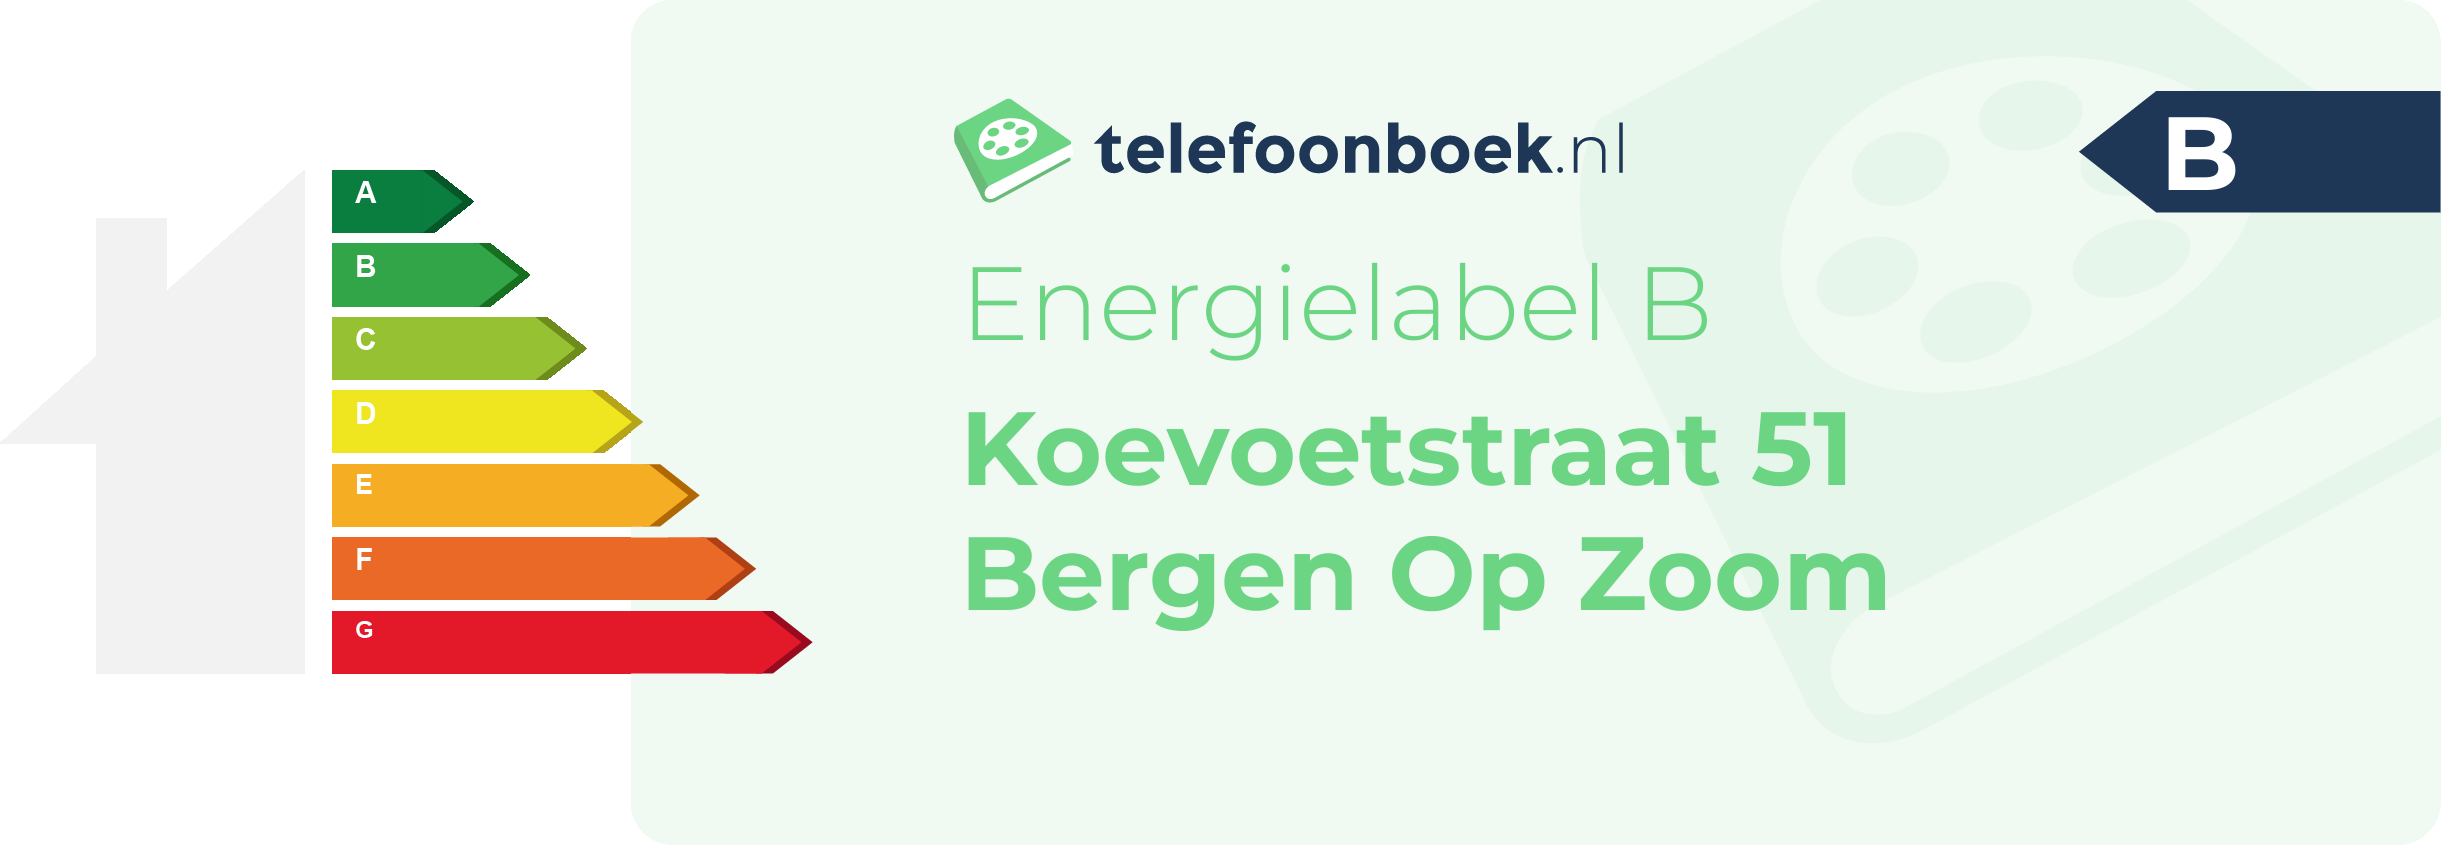 Energielabel Koevoetstraat 51 Bergen Op Zoom